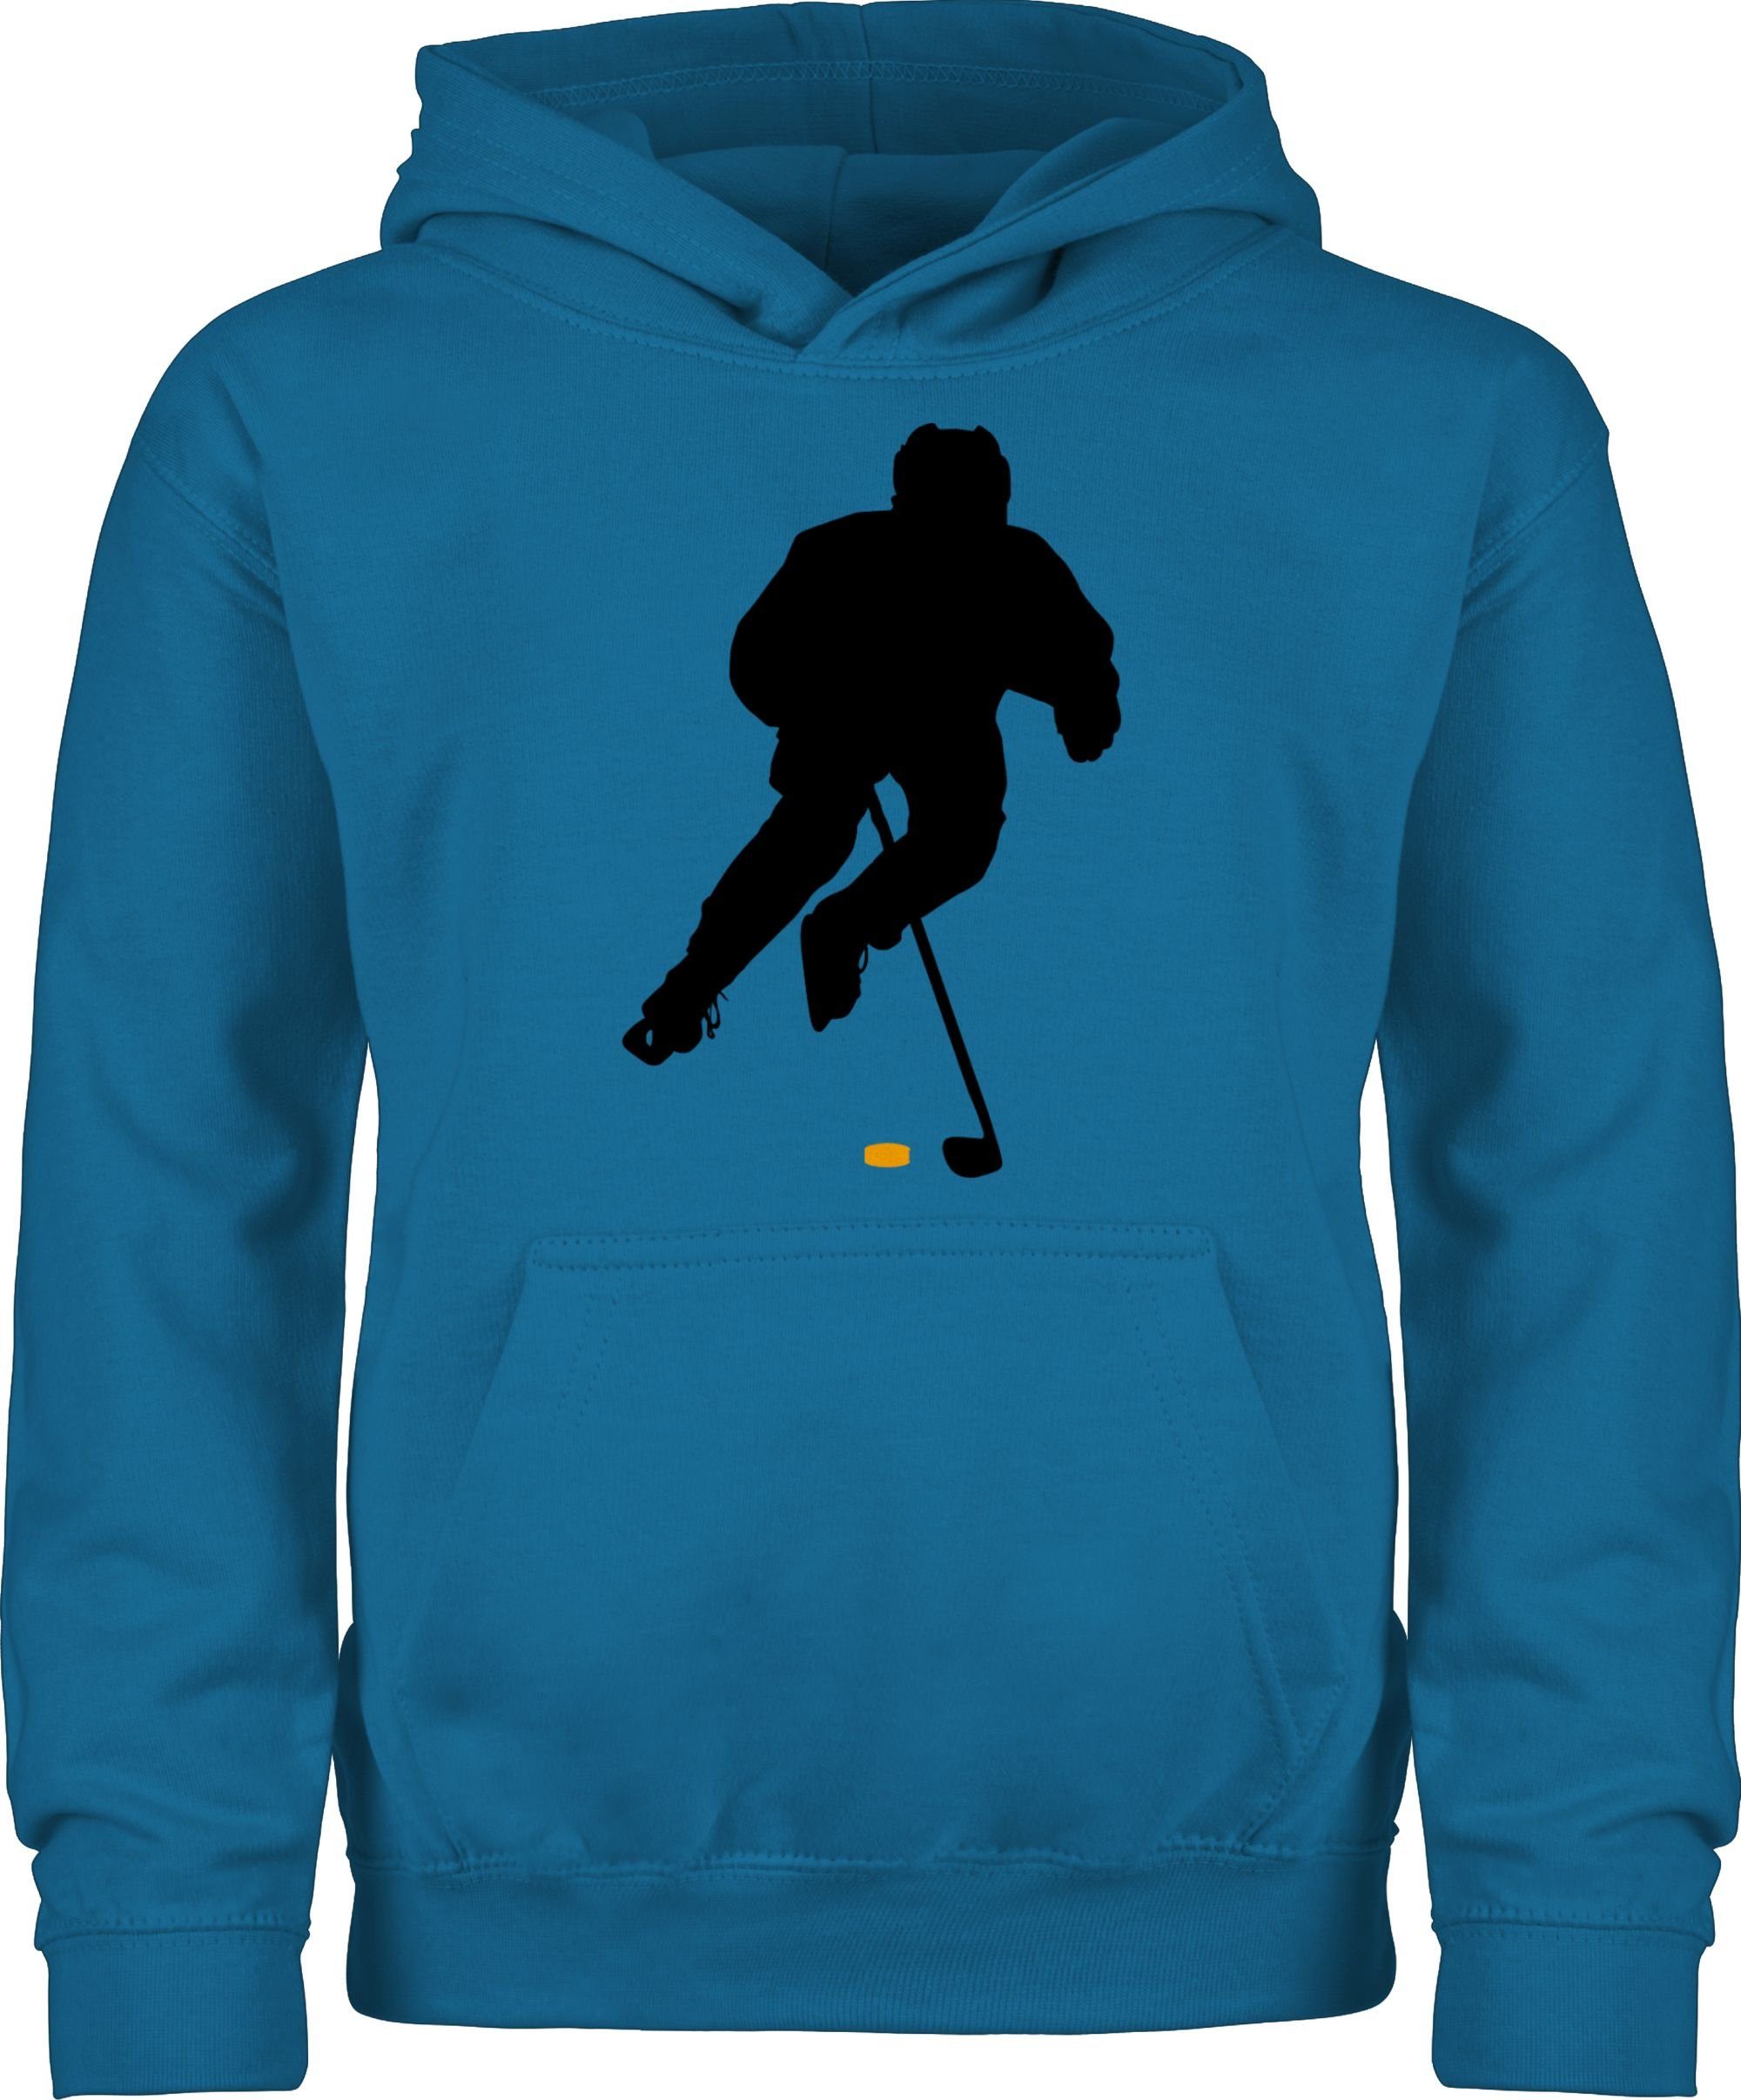 Kleidung Shirtracer Kinder Himmelblau Spieler Hoodie 1 Eishockey Sport